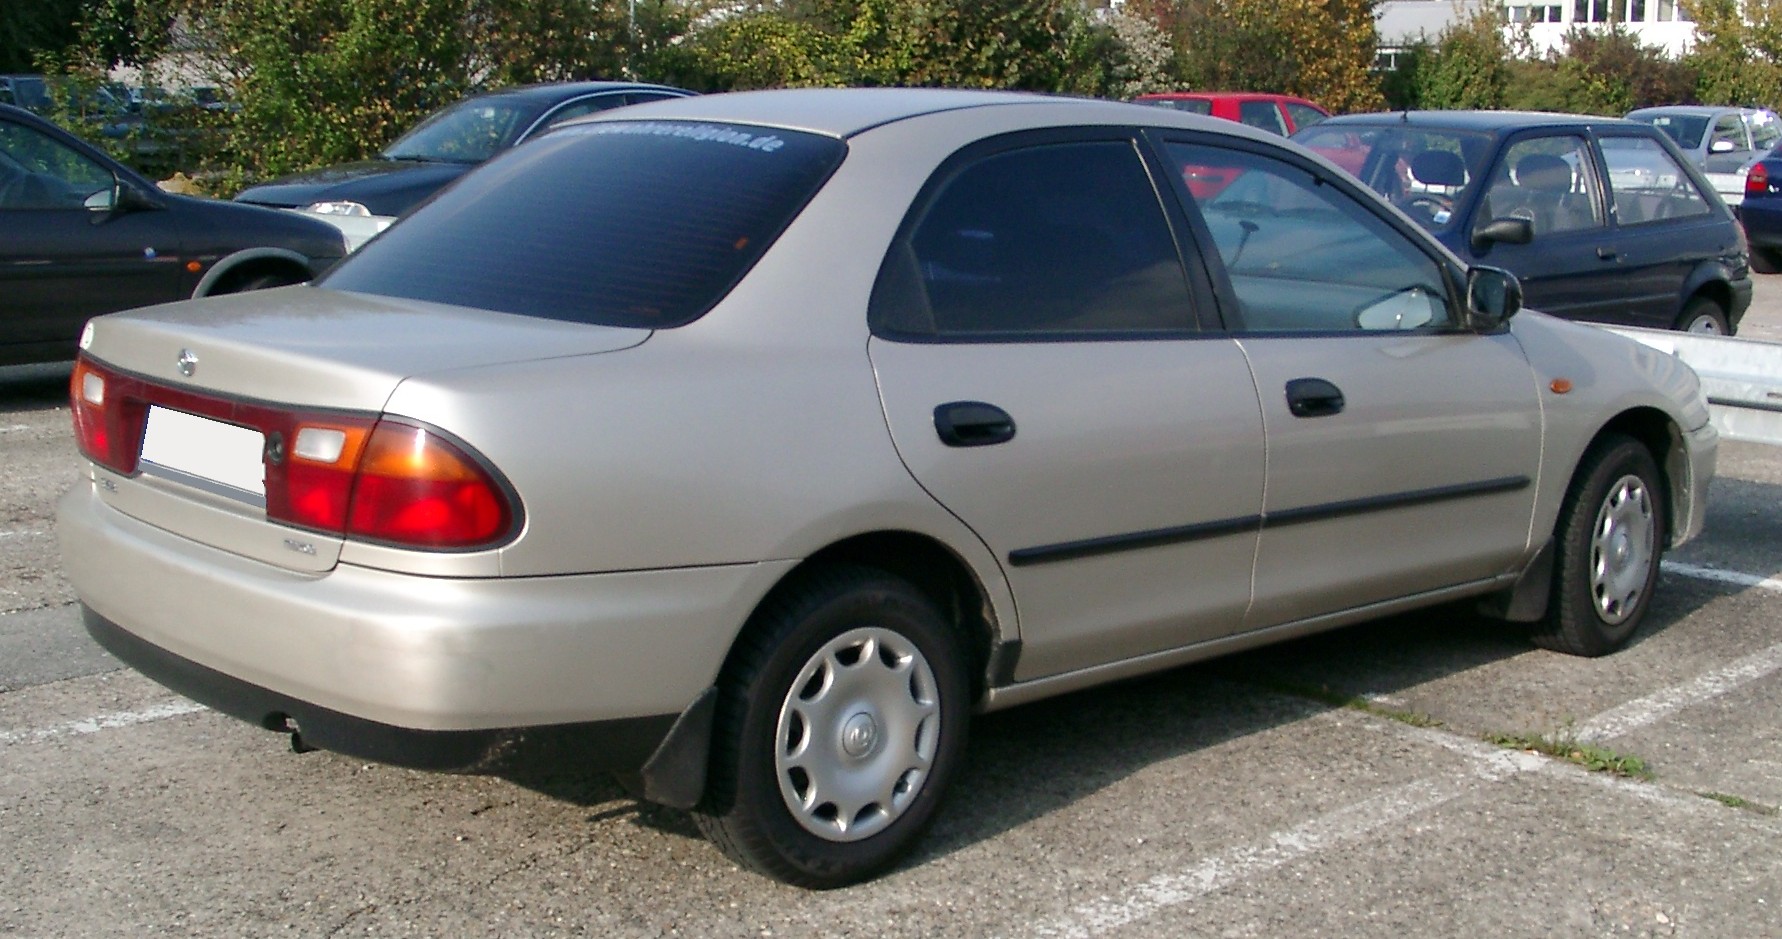 File:Mazda 323 rear 20071009.jpg